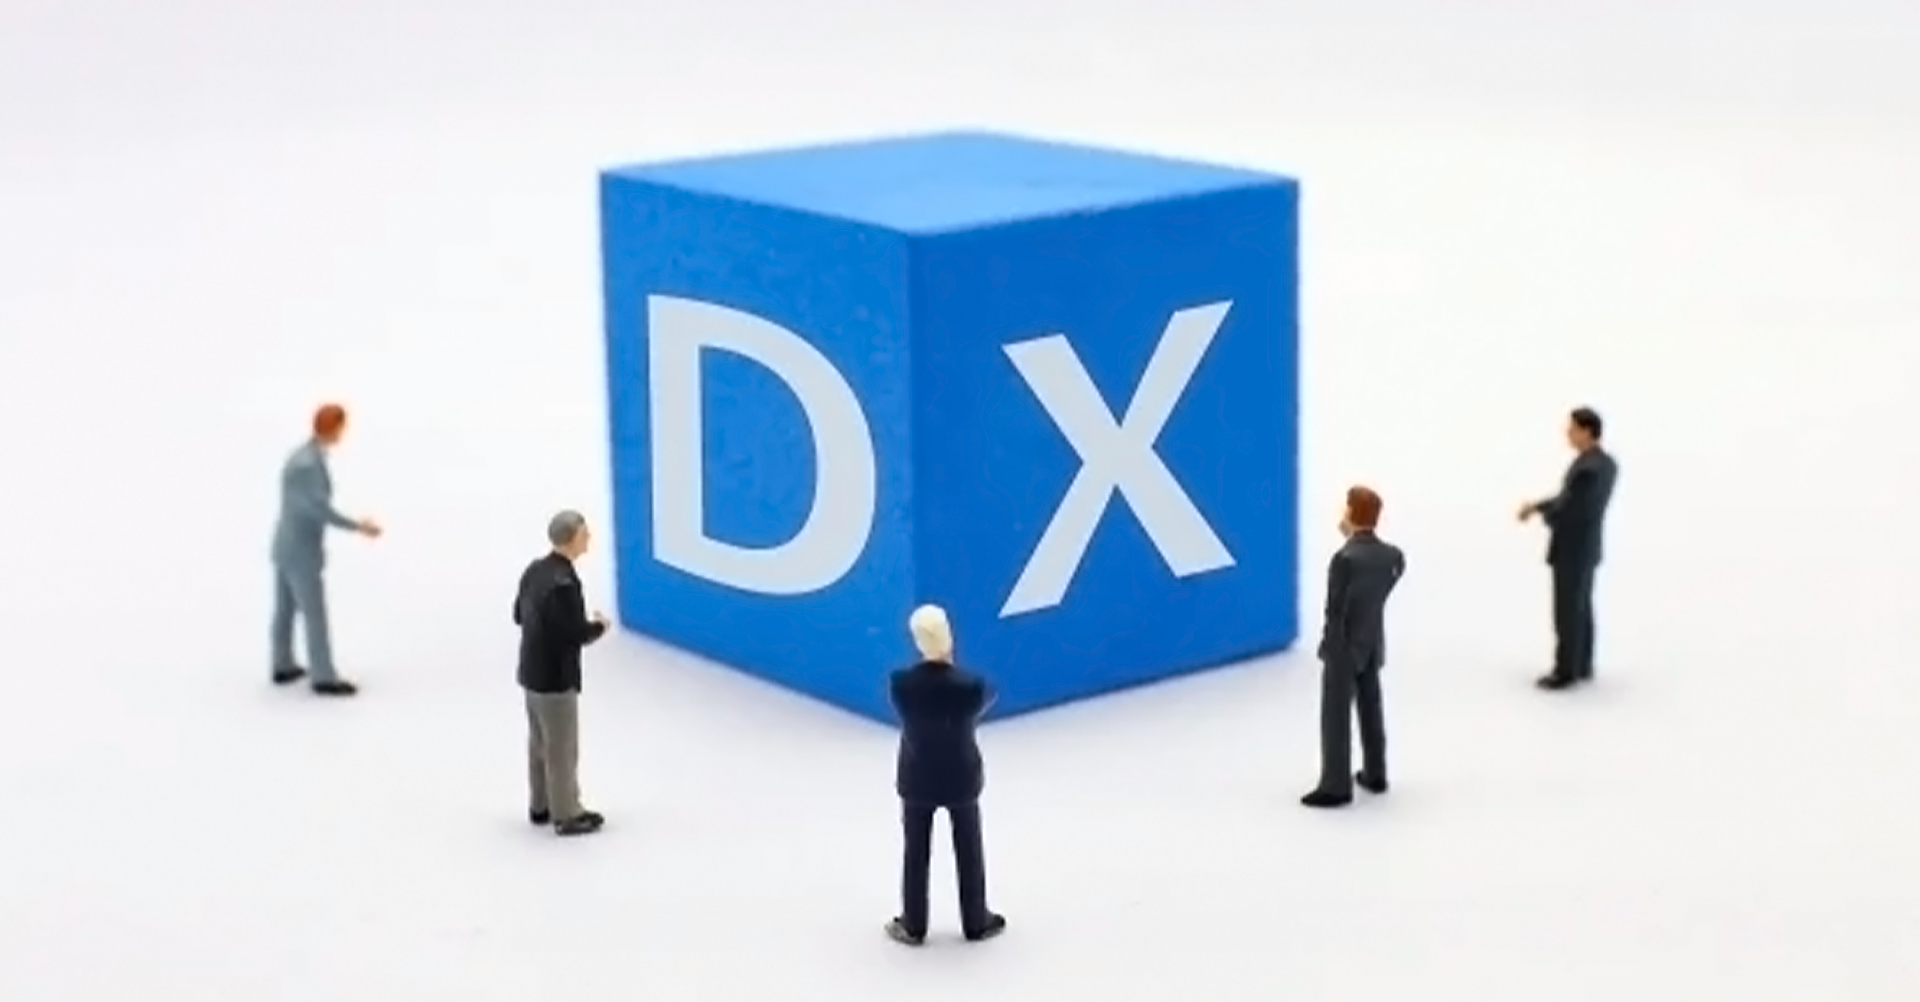 DX（デジタルトランスフォーメーション）という言葉は、テレビやネットでもよく目にするようになりました。これだけよく目にすると「何かDXしないと」という気持ちになってくる企業や経営者の方も多いと思います。ではDXとはそもそもどのような意味でしょう。